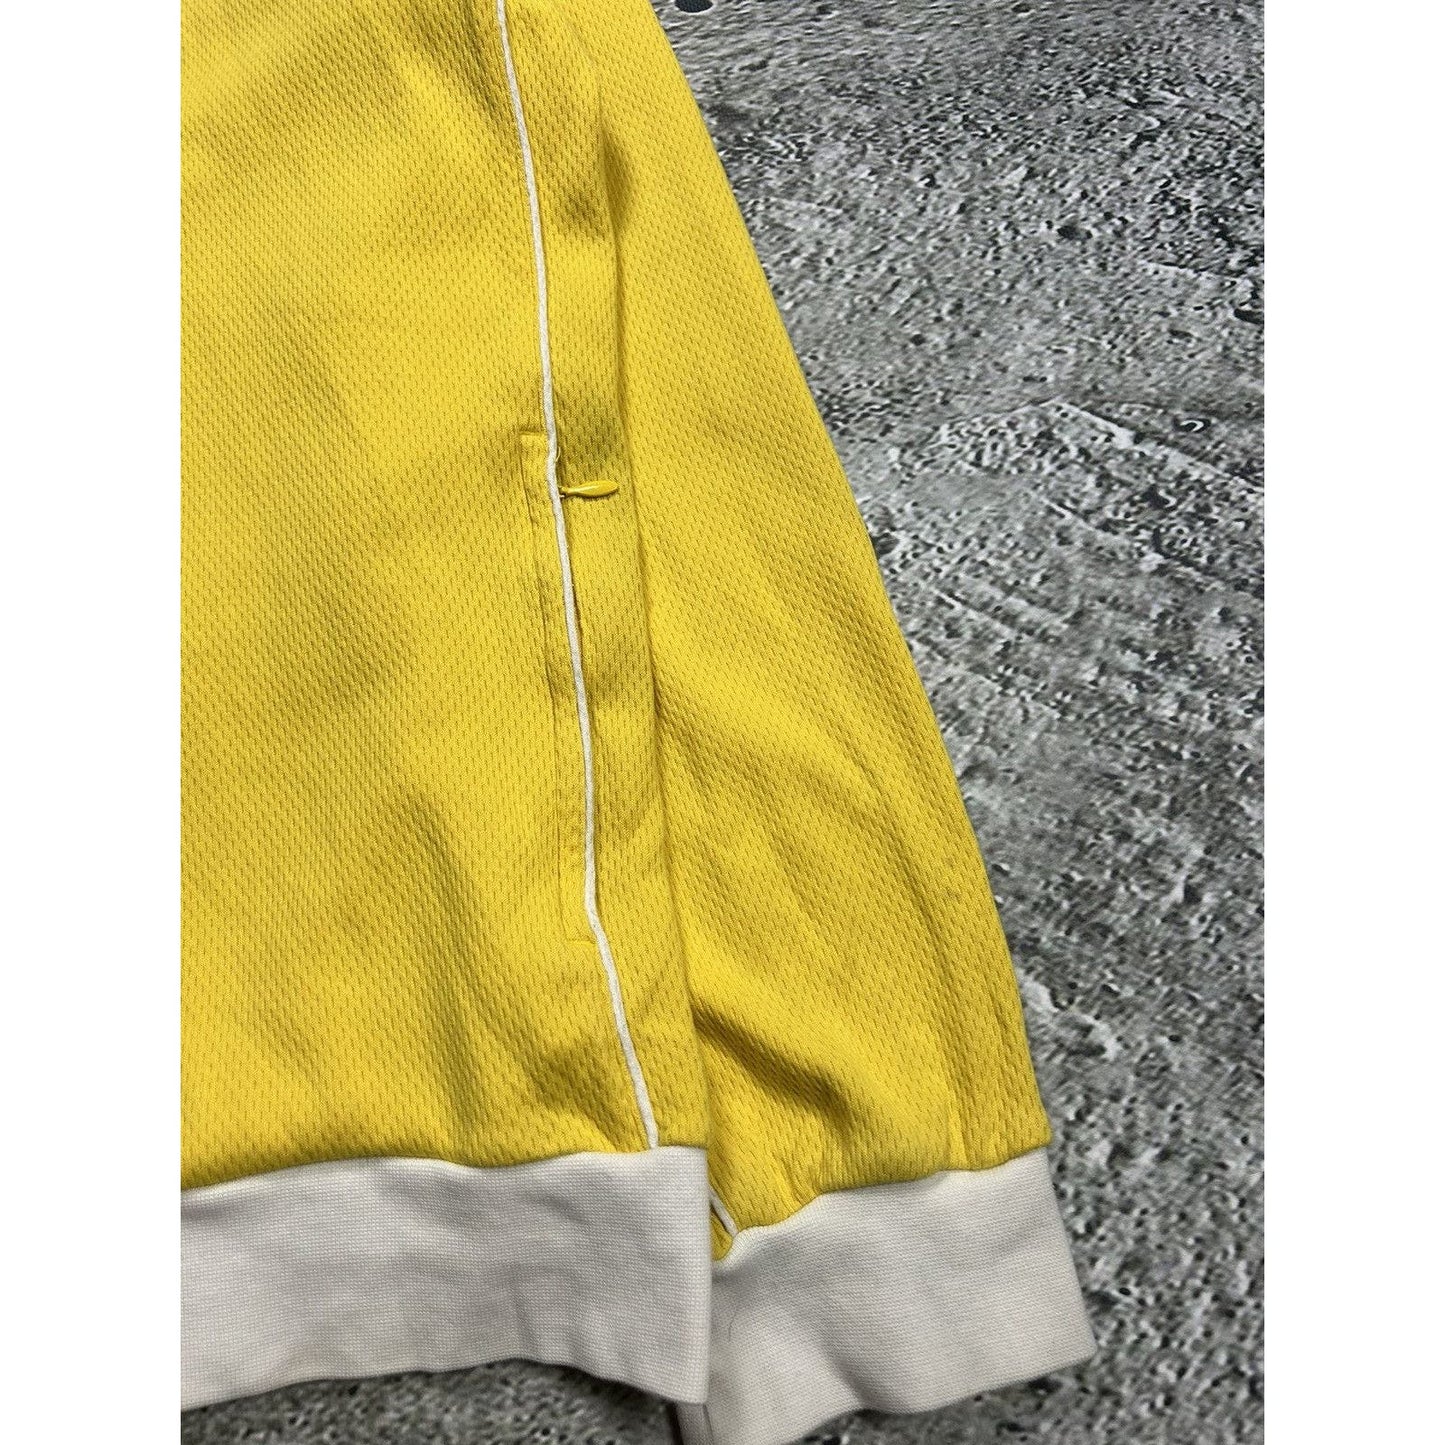 Nike Brazil track jacket 10 Ronaldinho vintage yellow